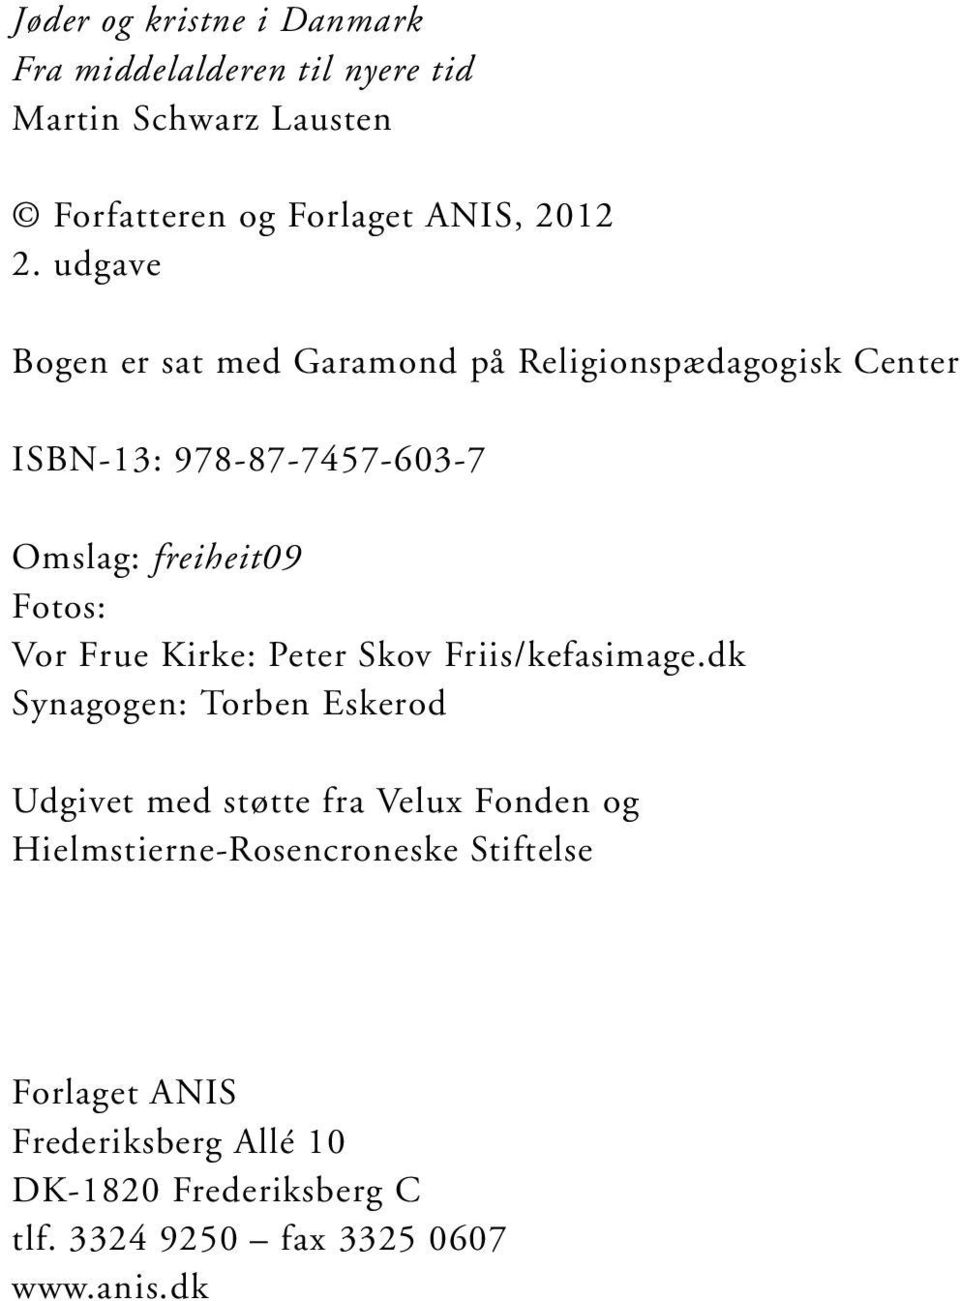 Frue Kirke: Peter Skov Friis/kefasimage.